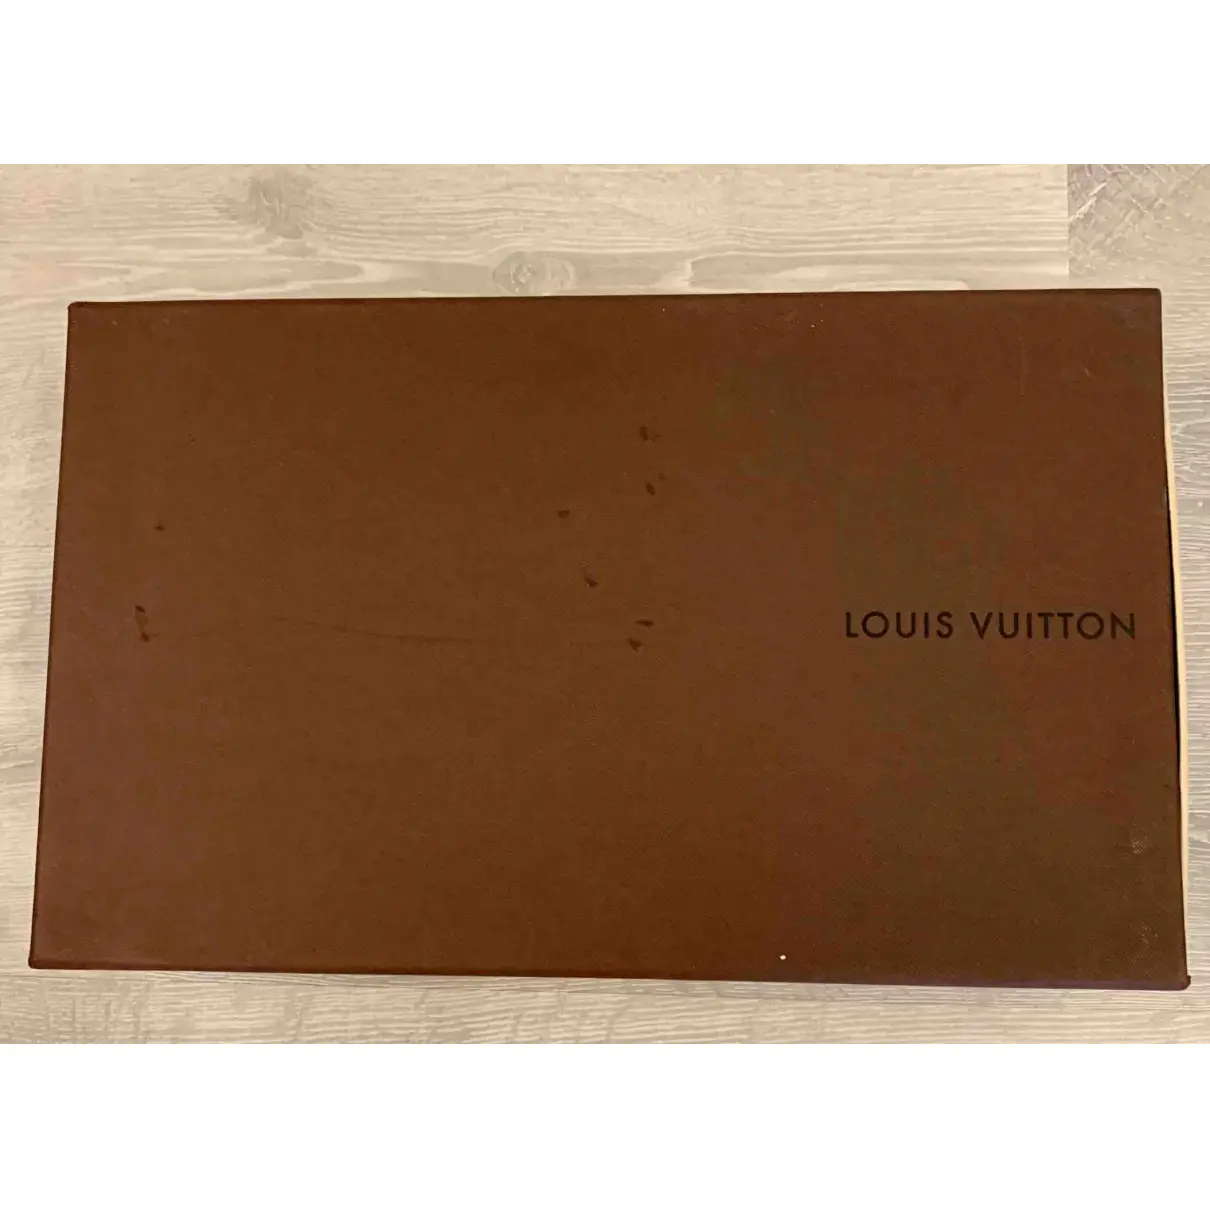 Leather ankle boots Louis Vuitton - Vintage